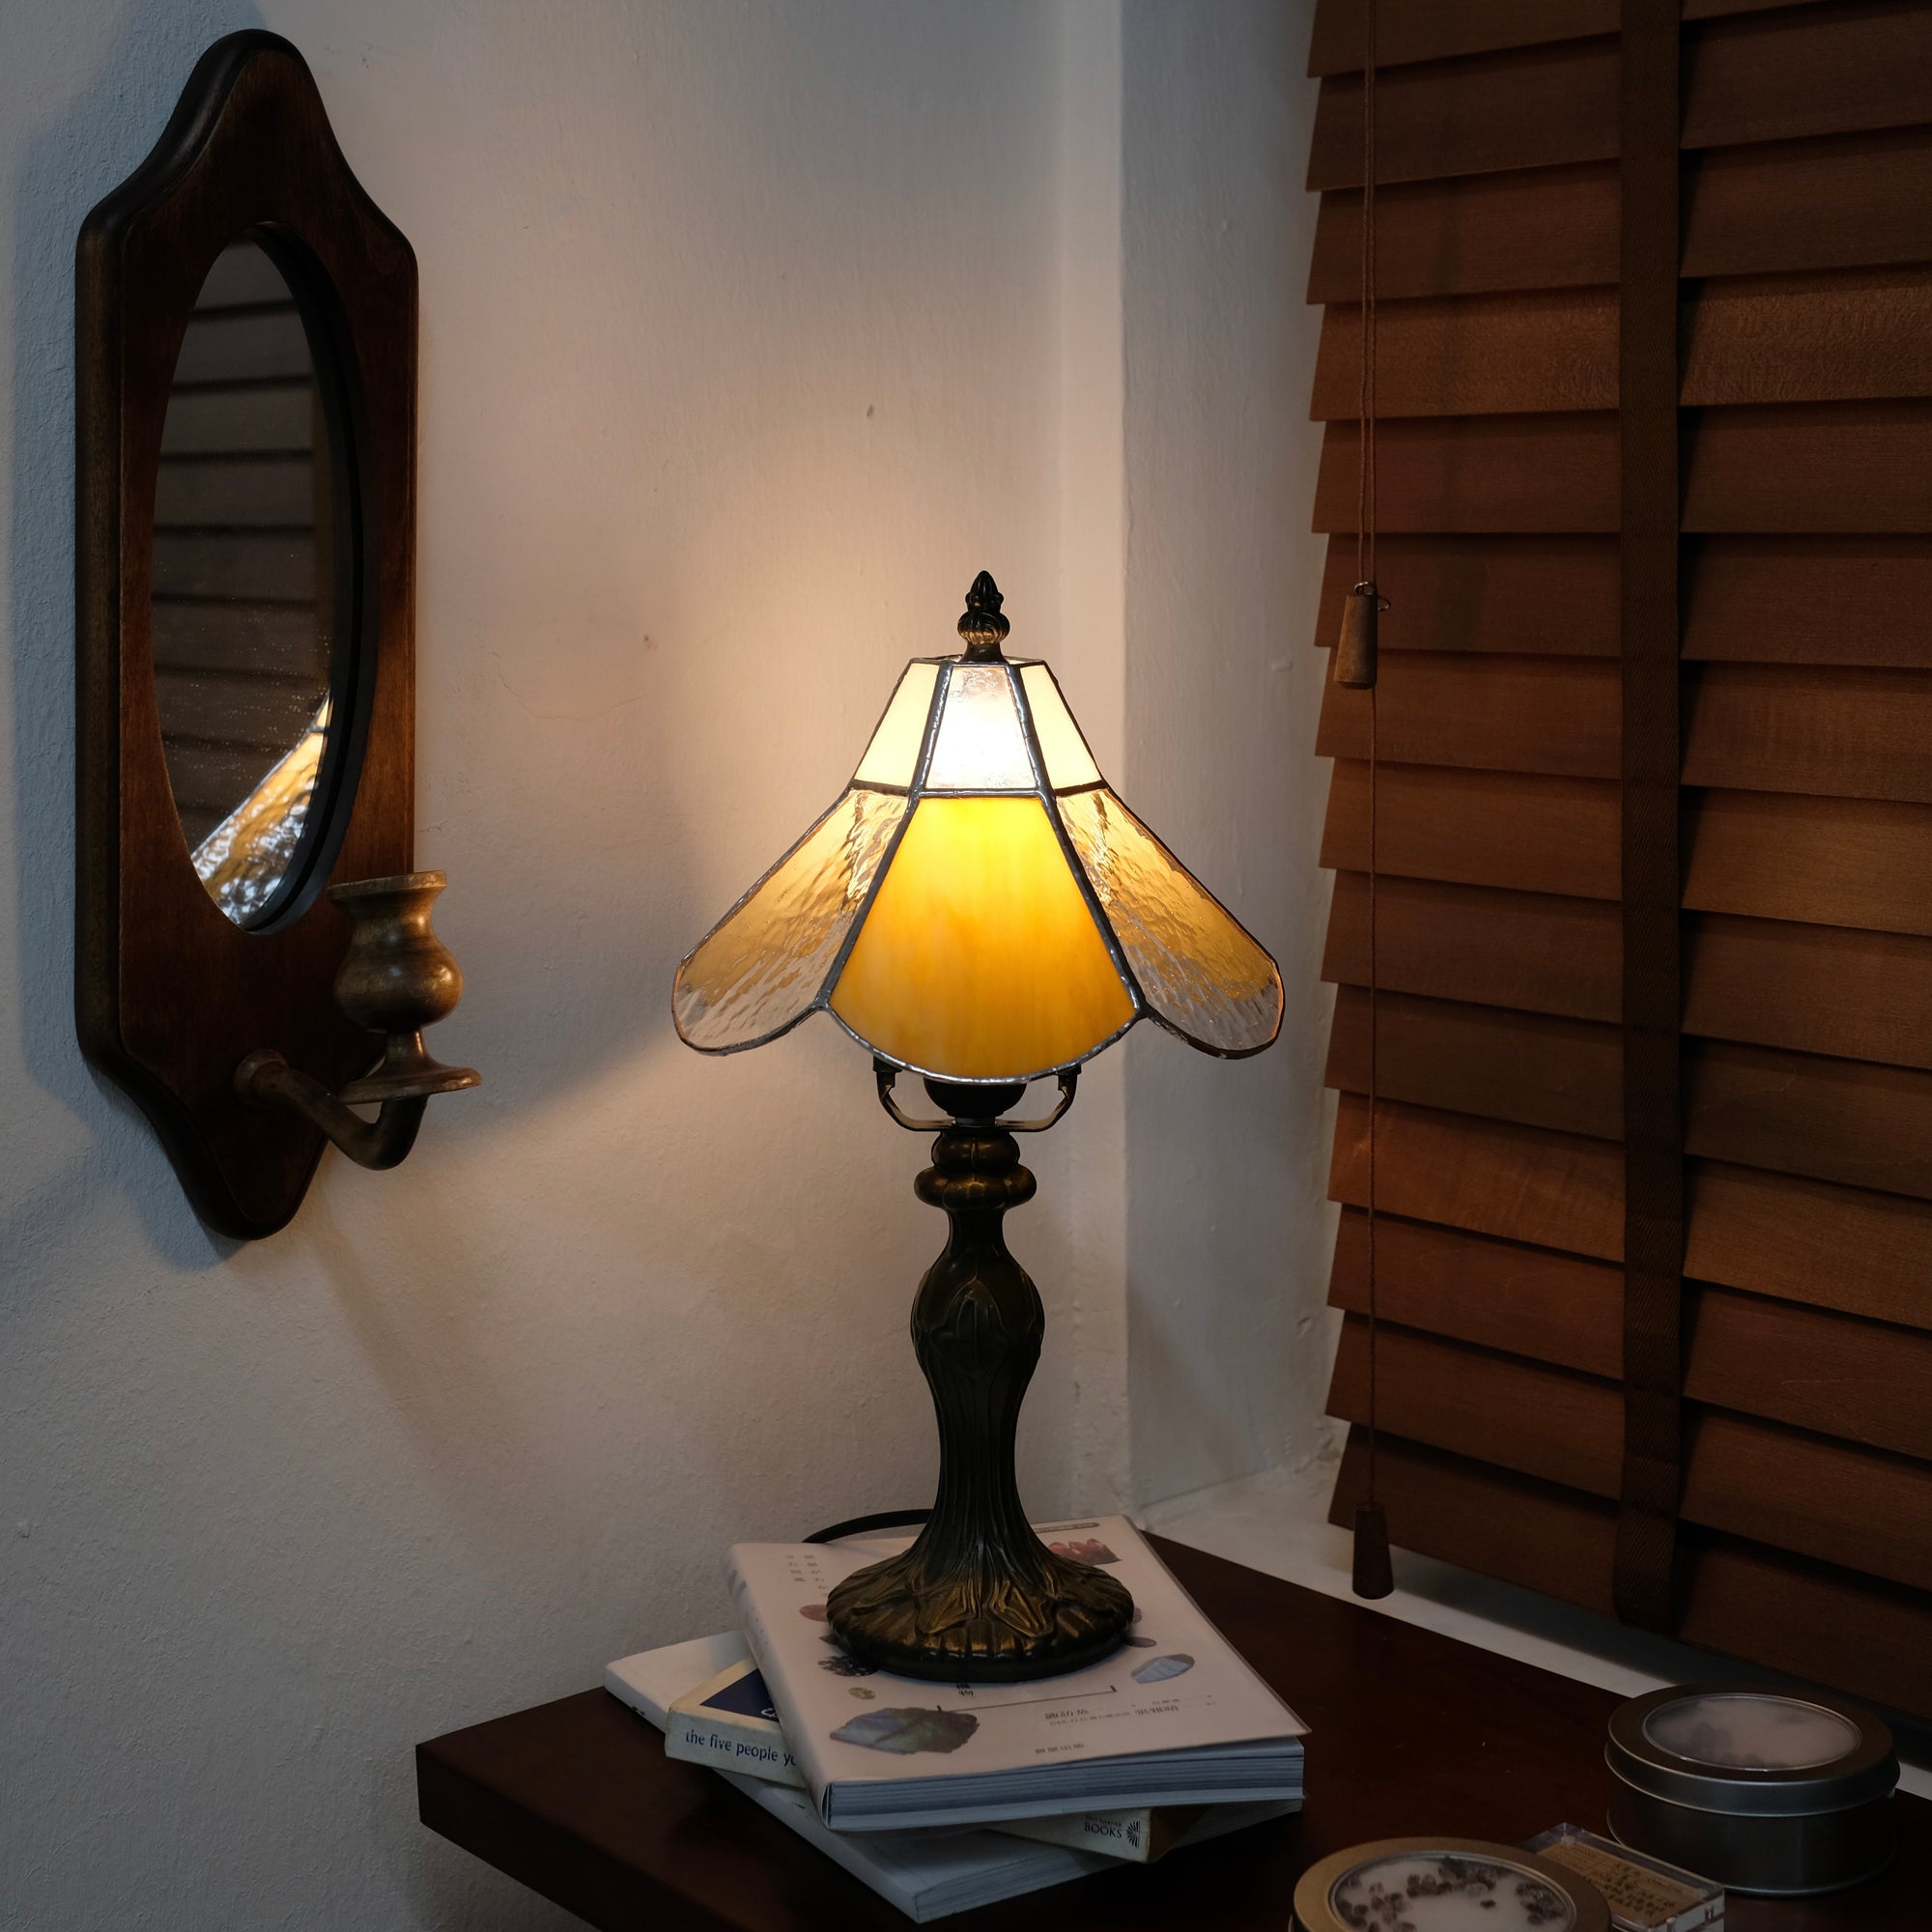 玻璃飾物工作坊 - 枱燈 Stained Glass Workshop - Table Lamp